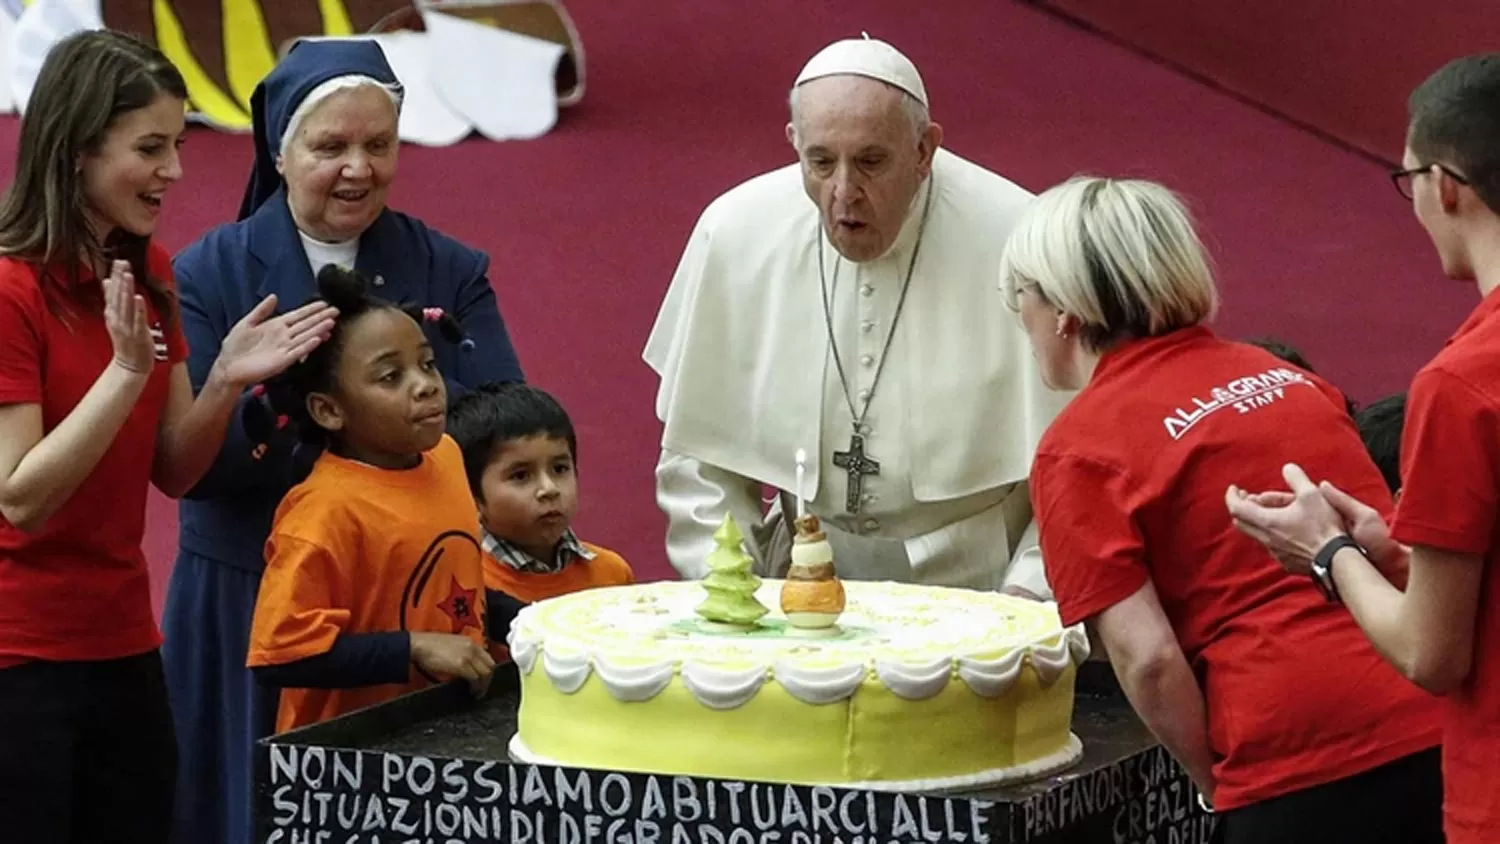 CUMPLEAÑOS. El papa Francisco festejó su sexto cumpleaños en el Vaticano.